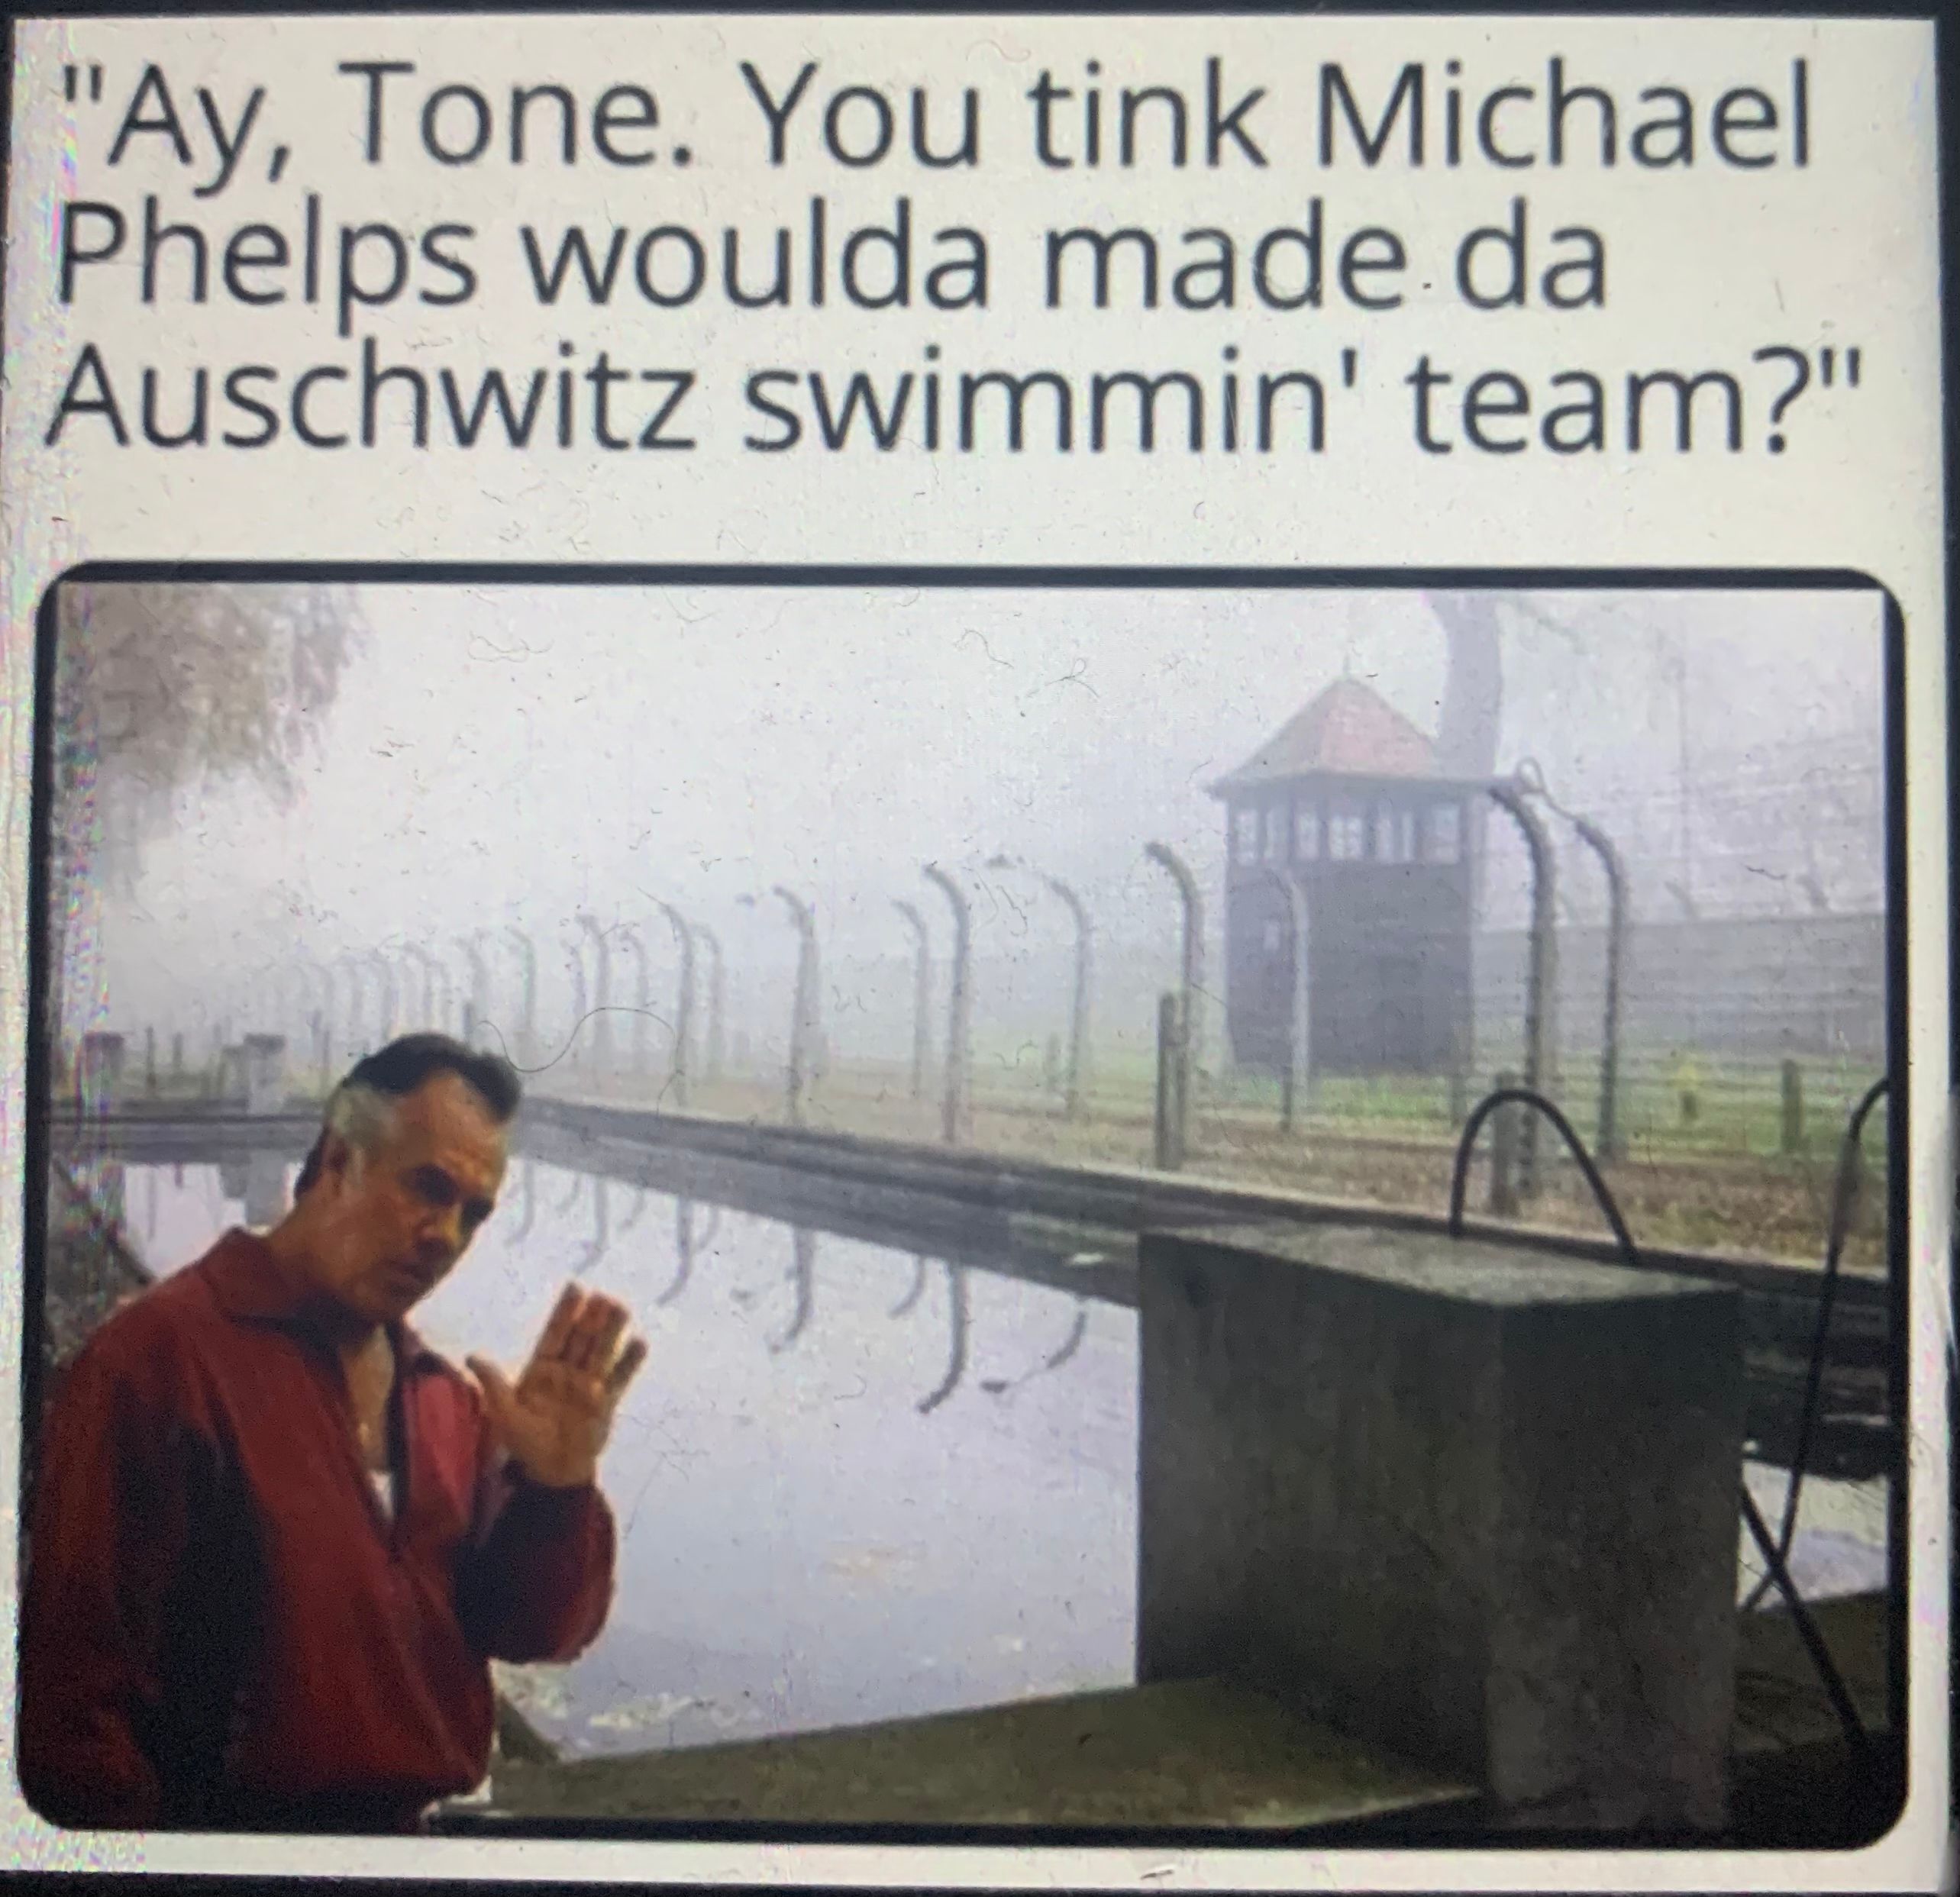 Une photo de Paulie des Sopranos debout près de la piscine d'Auschwitz, avec un texte au-dessus qui dit "Ay, Tone". Vous pensez que Michael Phelps aurait fait partie de l'équipe de natation d'Auschwitz ?